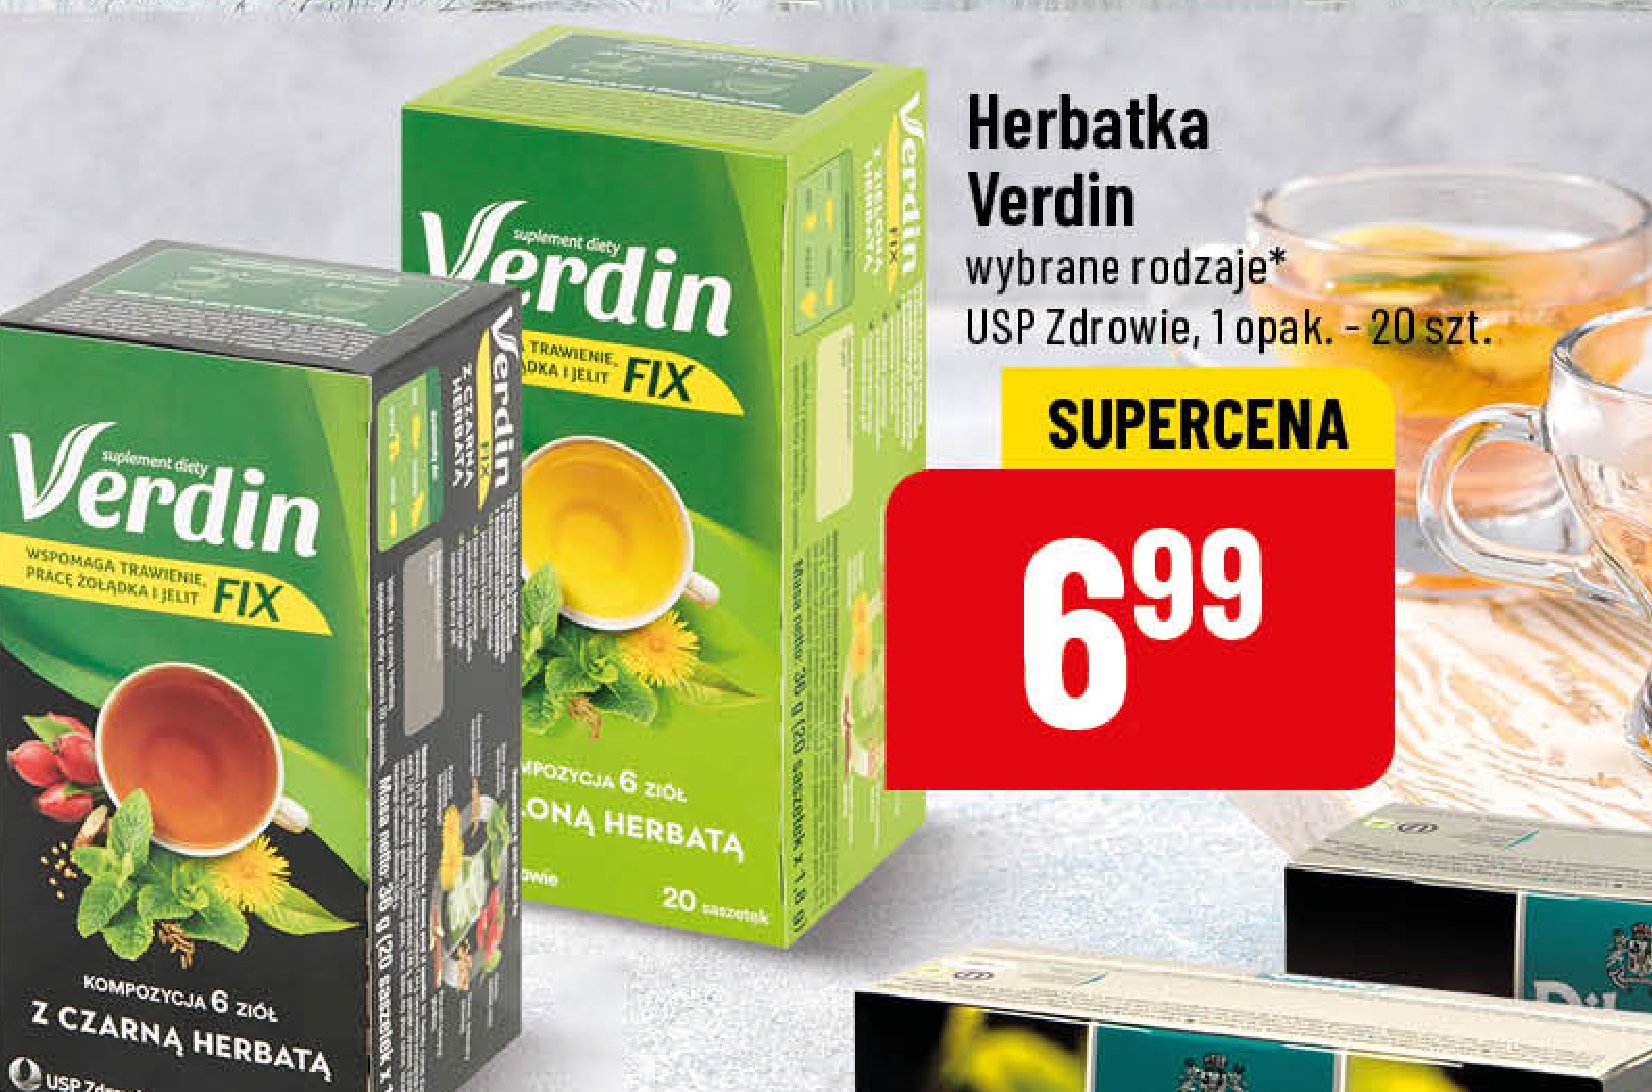 Herbata z czarną herbatą Verdin fix promocja